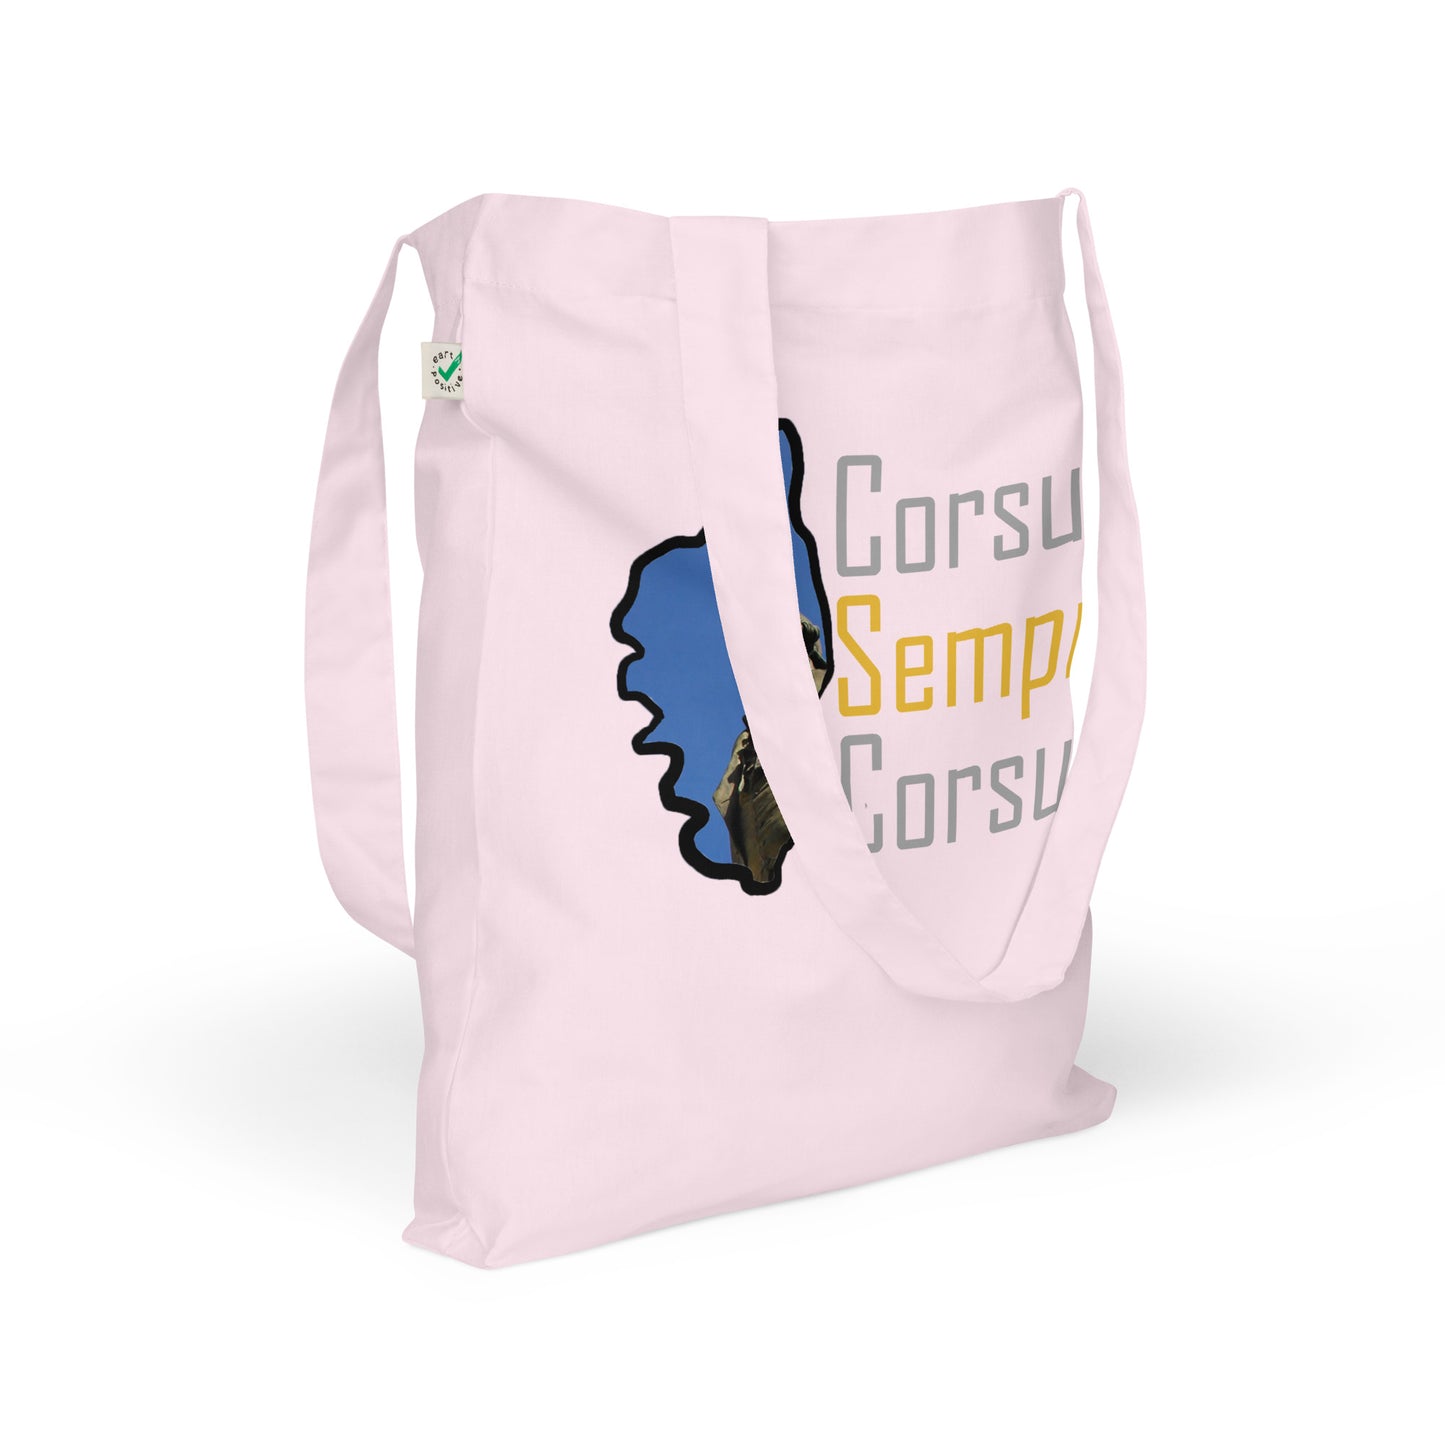 Tote bag tendance et biologique Corsu Sempre Corsu - Ochju Ochju Candy Pink Ochju Tote bag tendance et biologique Corsu Sempre Corsu